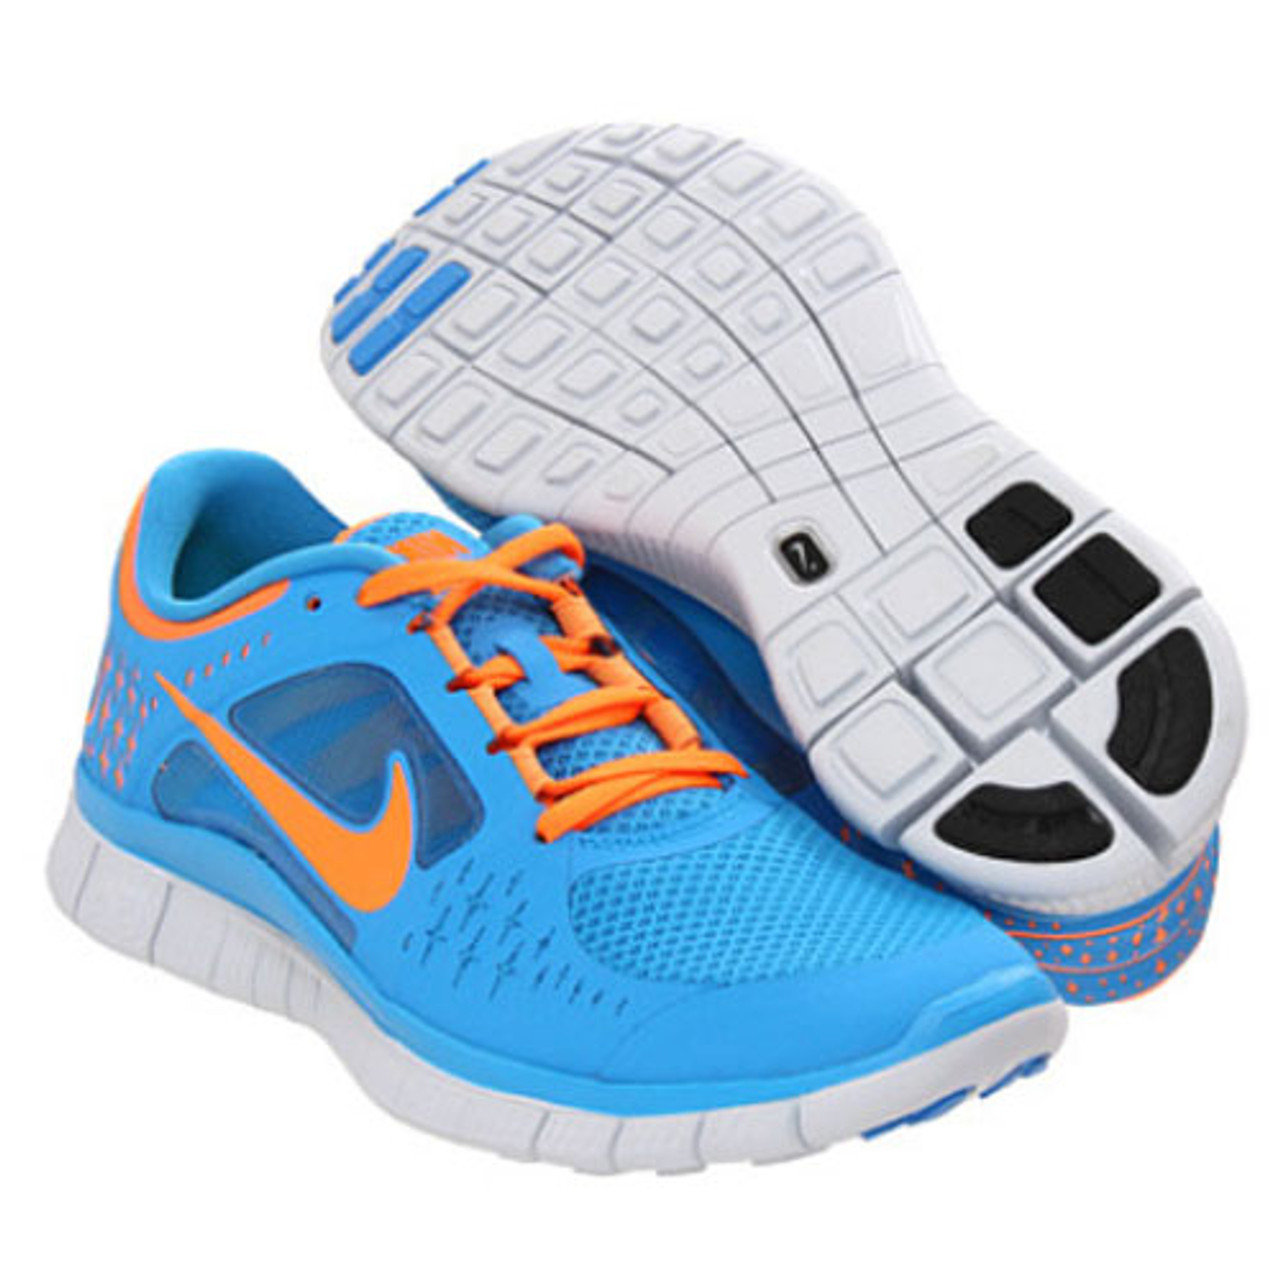 altijd opgraven mineraal Nike Free Run + 3 Blue/Orange - | Discount Nike Ladies Athletic & More -  Shoolu.com | Shoolu.com